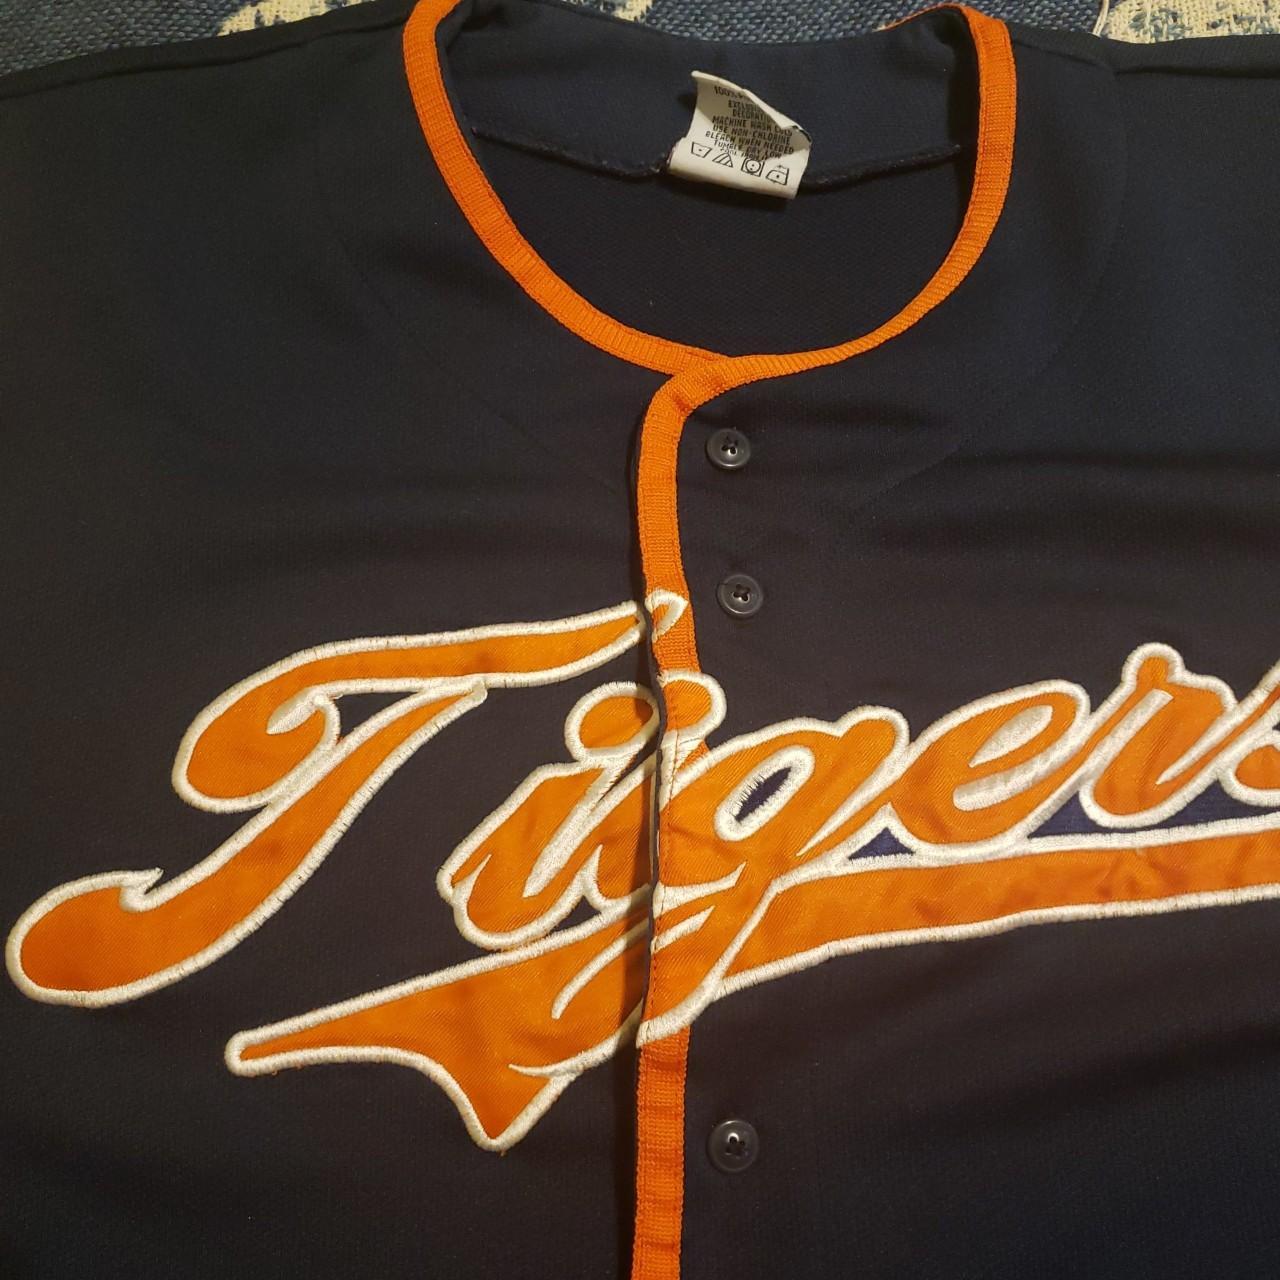 Vintage 90s Detroit Tigers Baseball Jersey - Depop